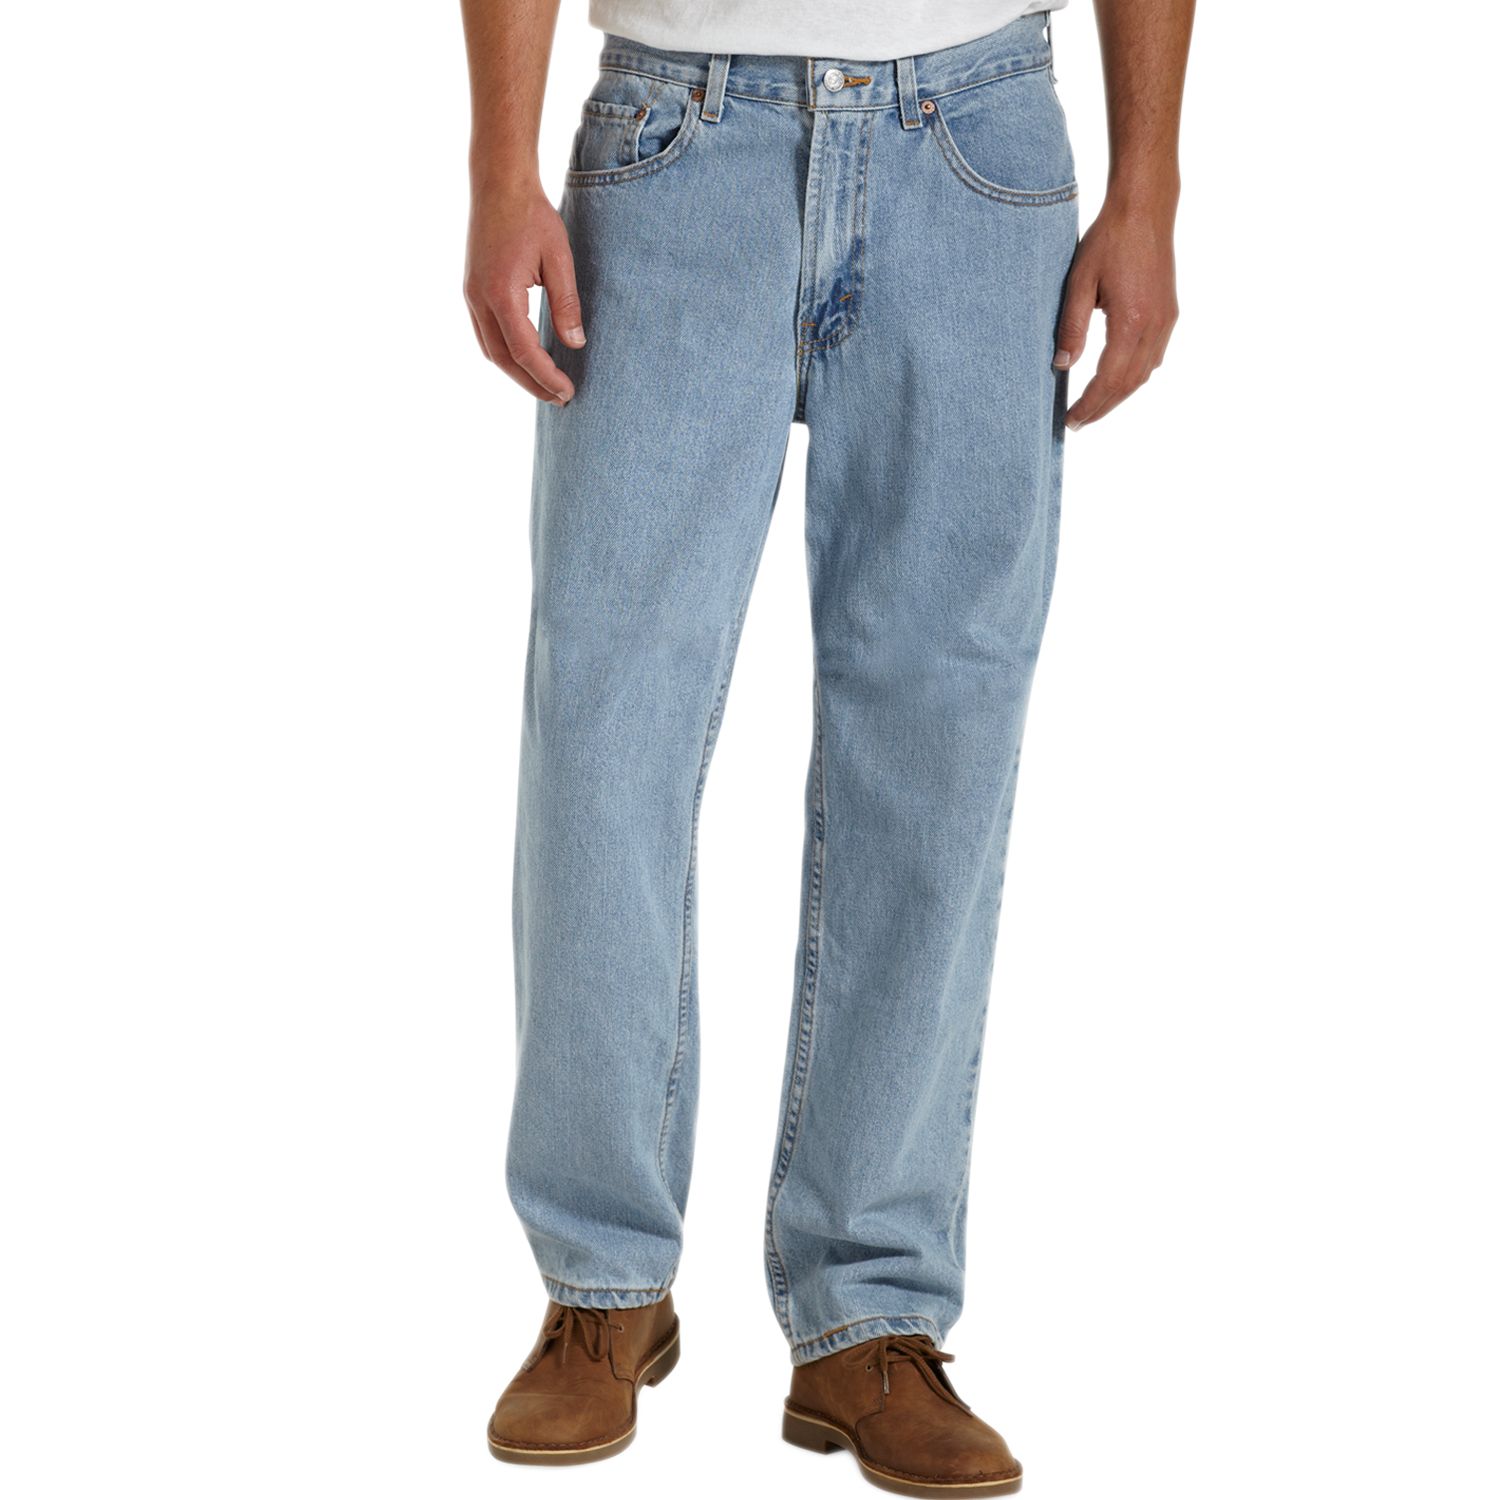 560 levis jeans men